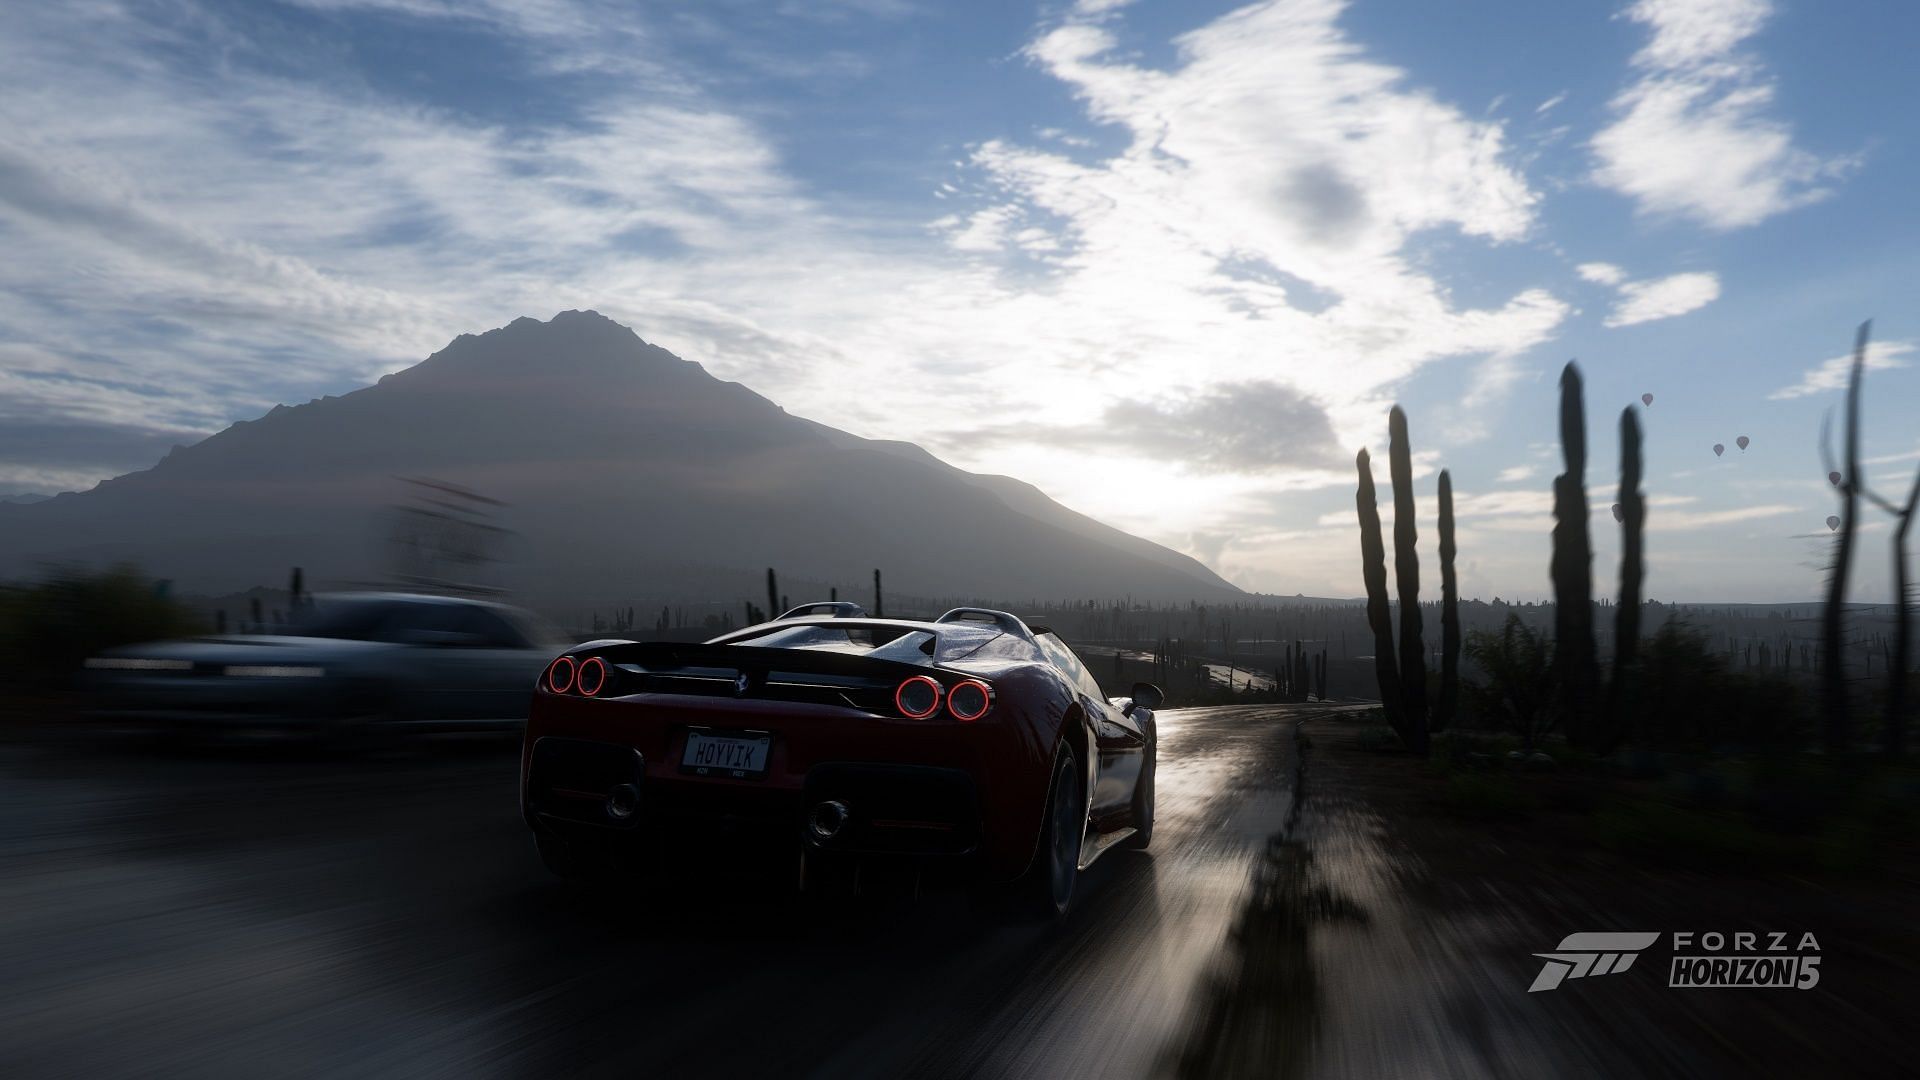 Driving a Ferrari through the sandy shores of Forza Horizon 5.